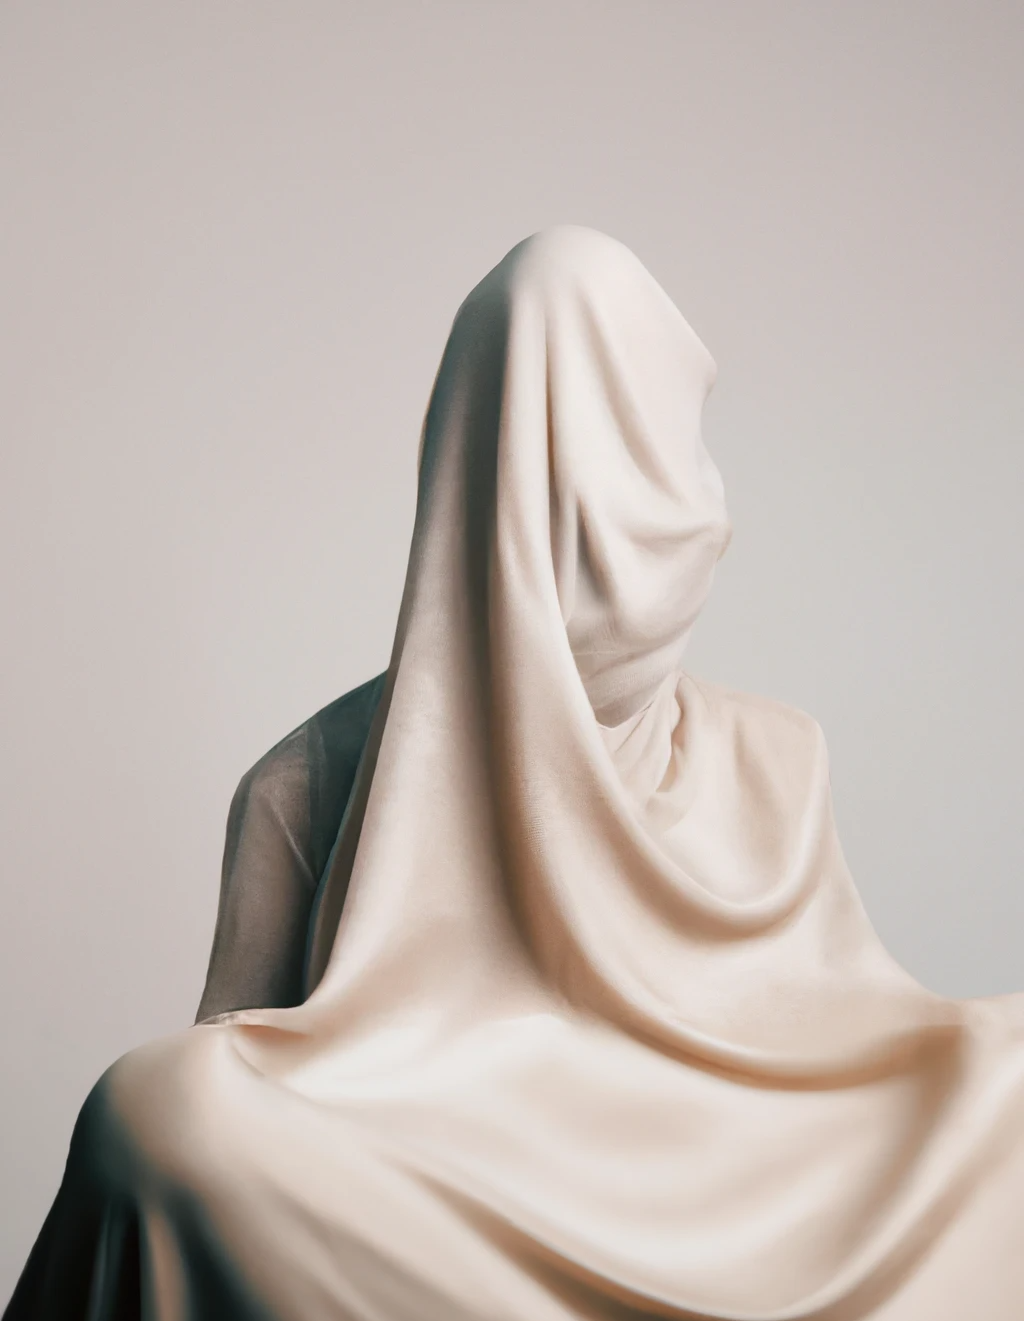 DALL·E 2022-12-19 12.08.17 - photographie studio d'une tête d'homme invisible qui chante behind un voile dans les tons gris et beige.png